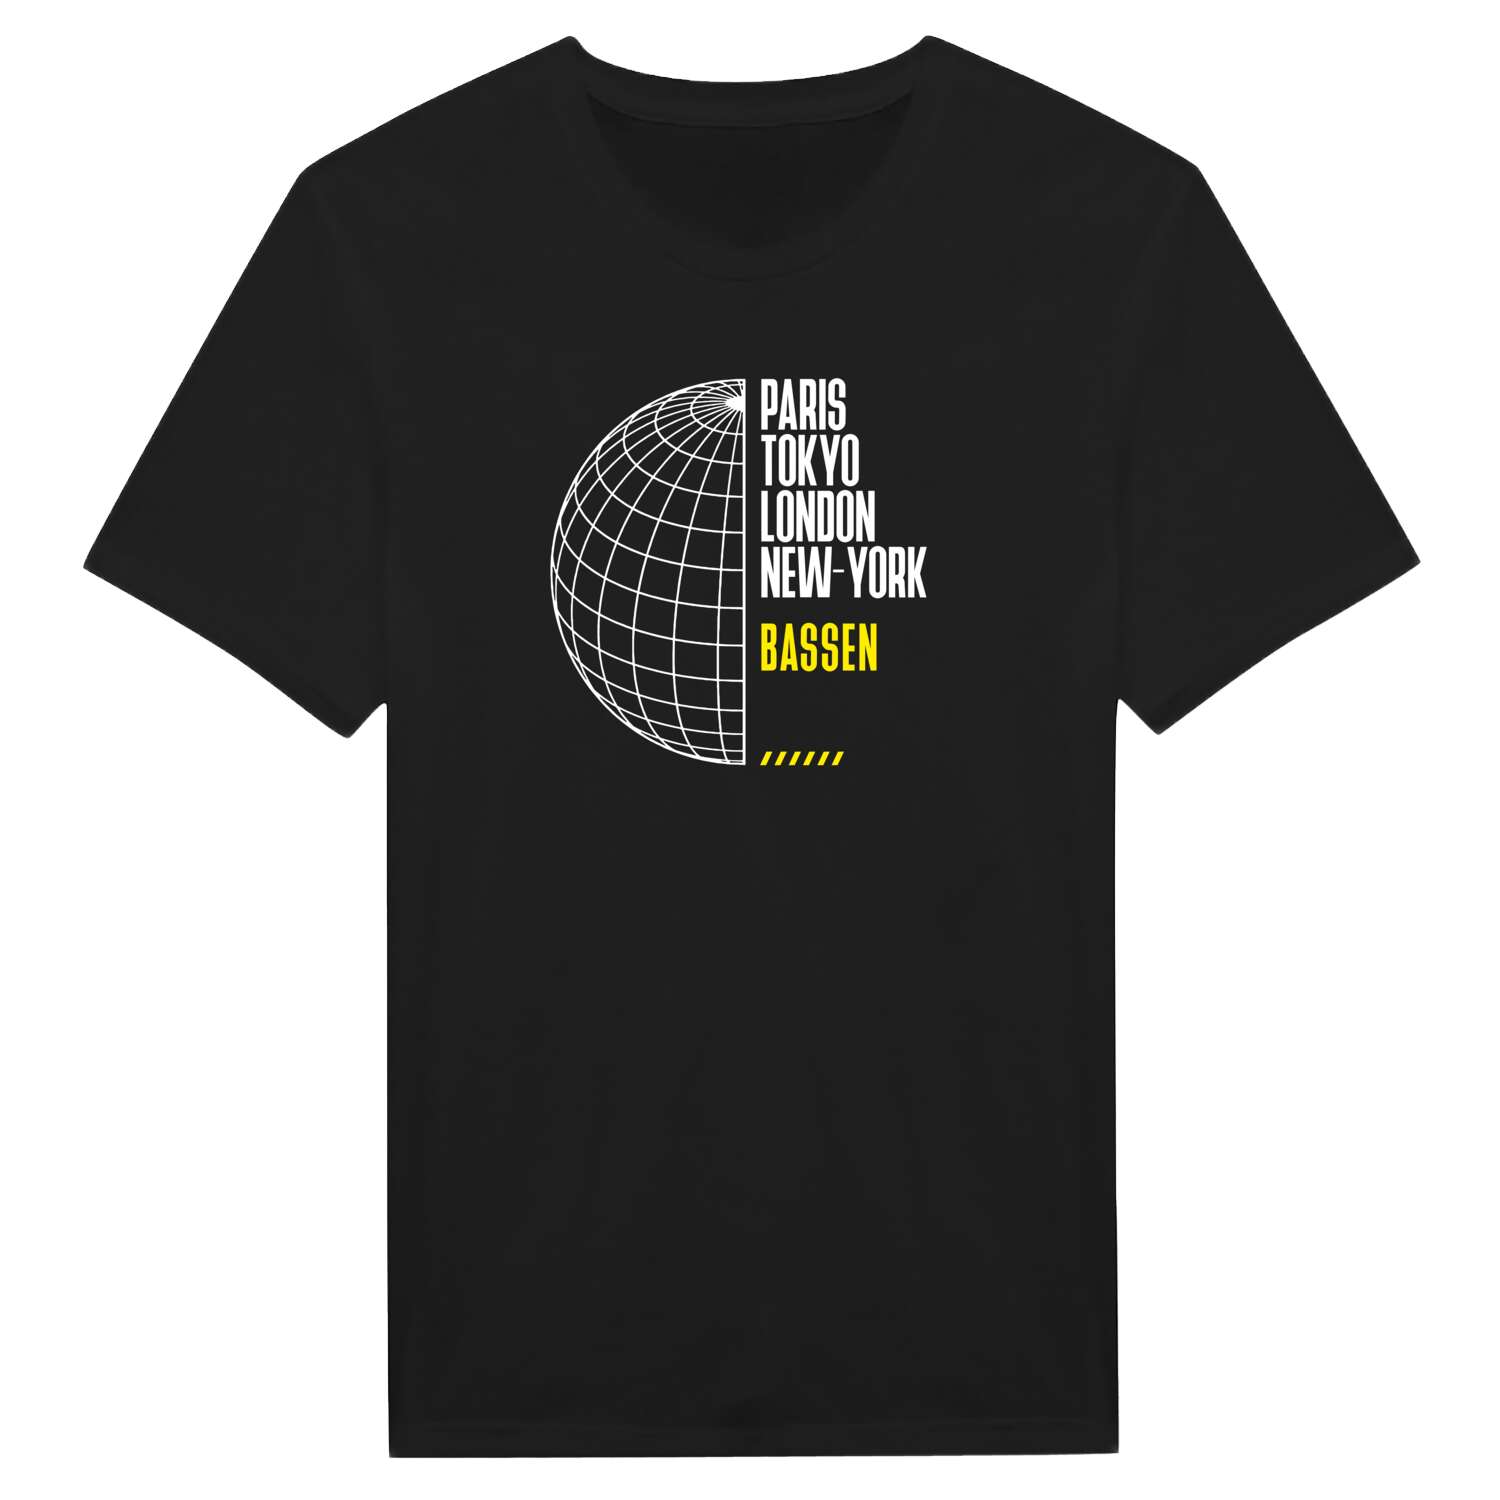 Bassen T-Shirt »Paris Tokyo London«